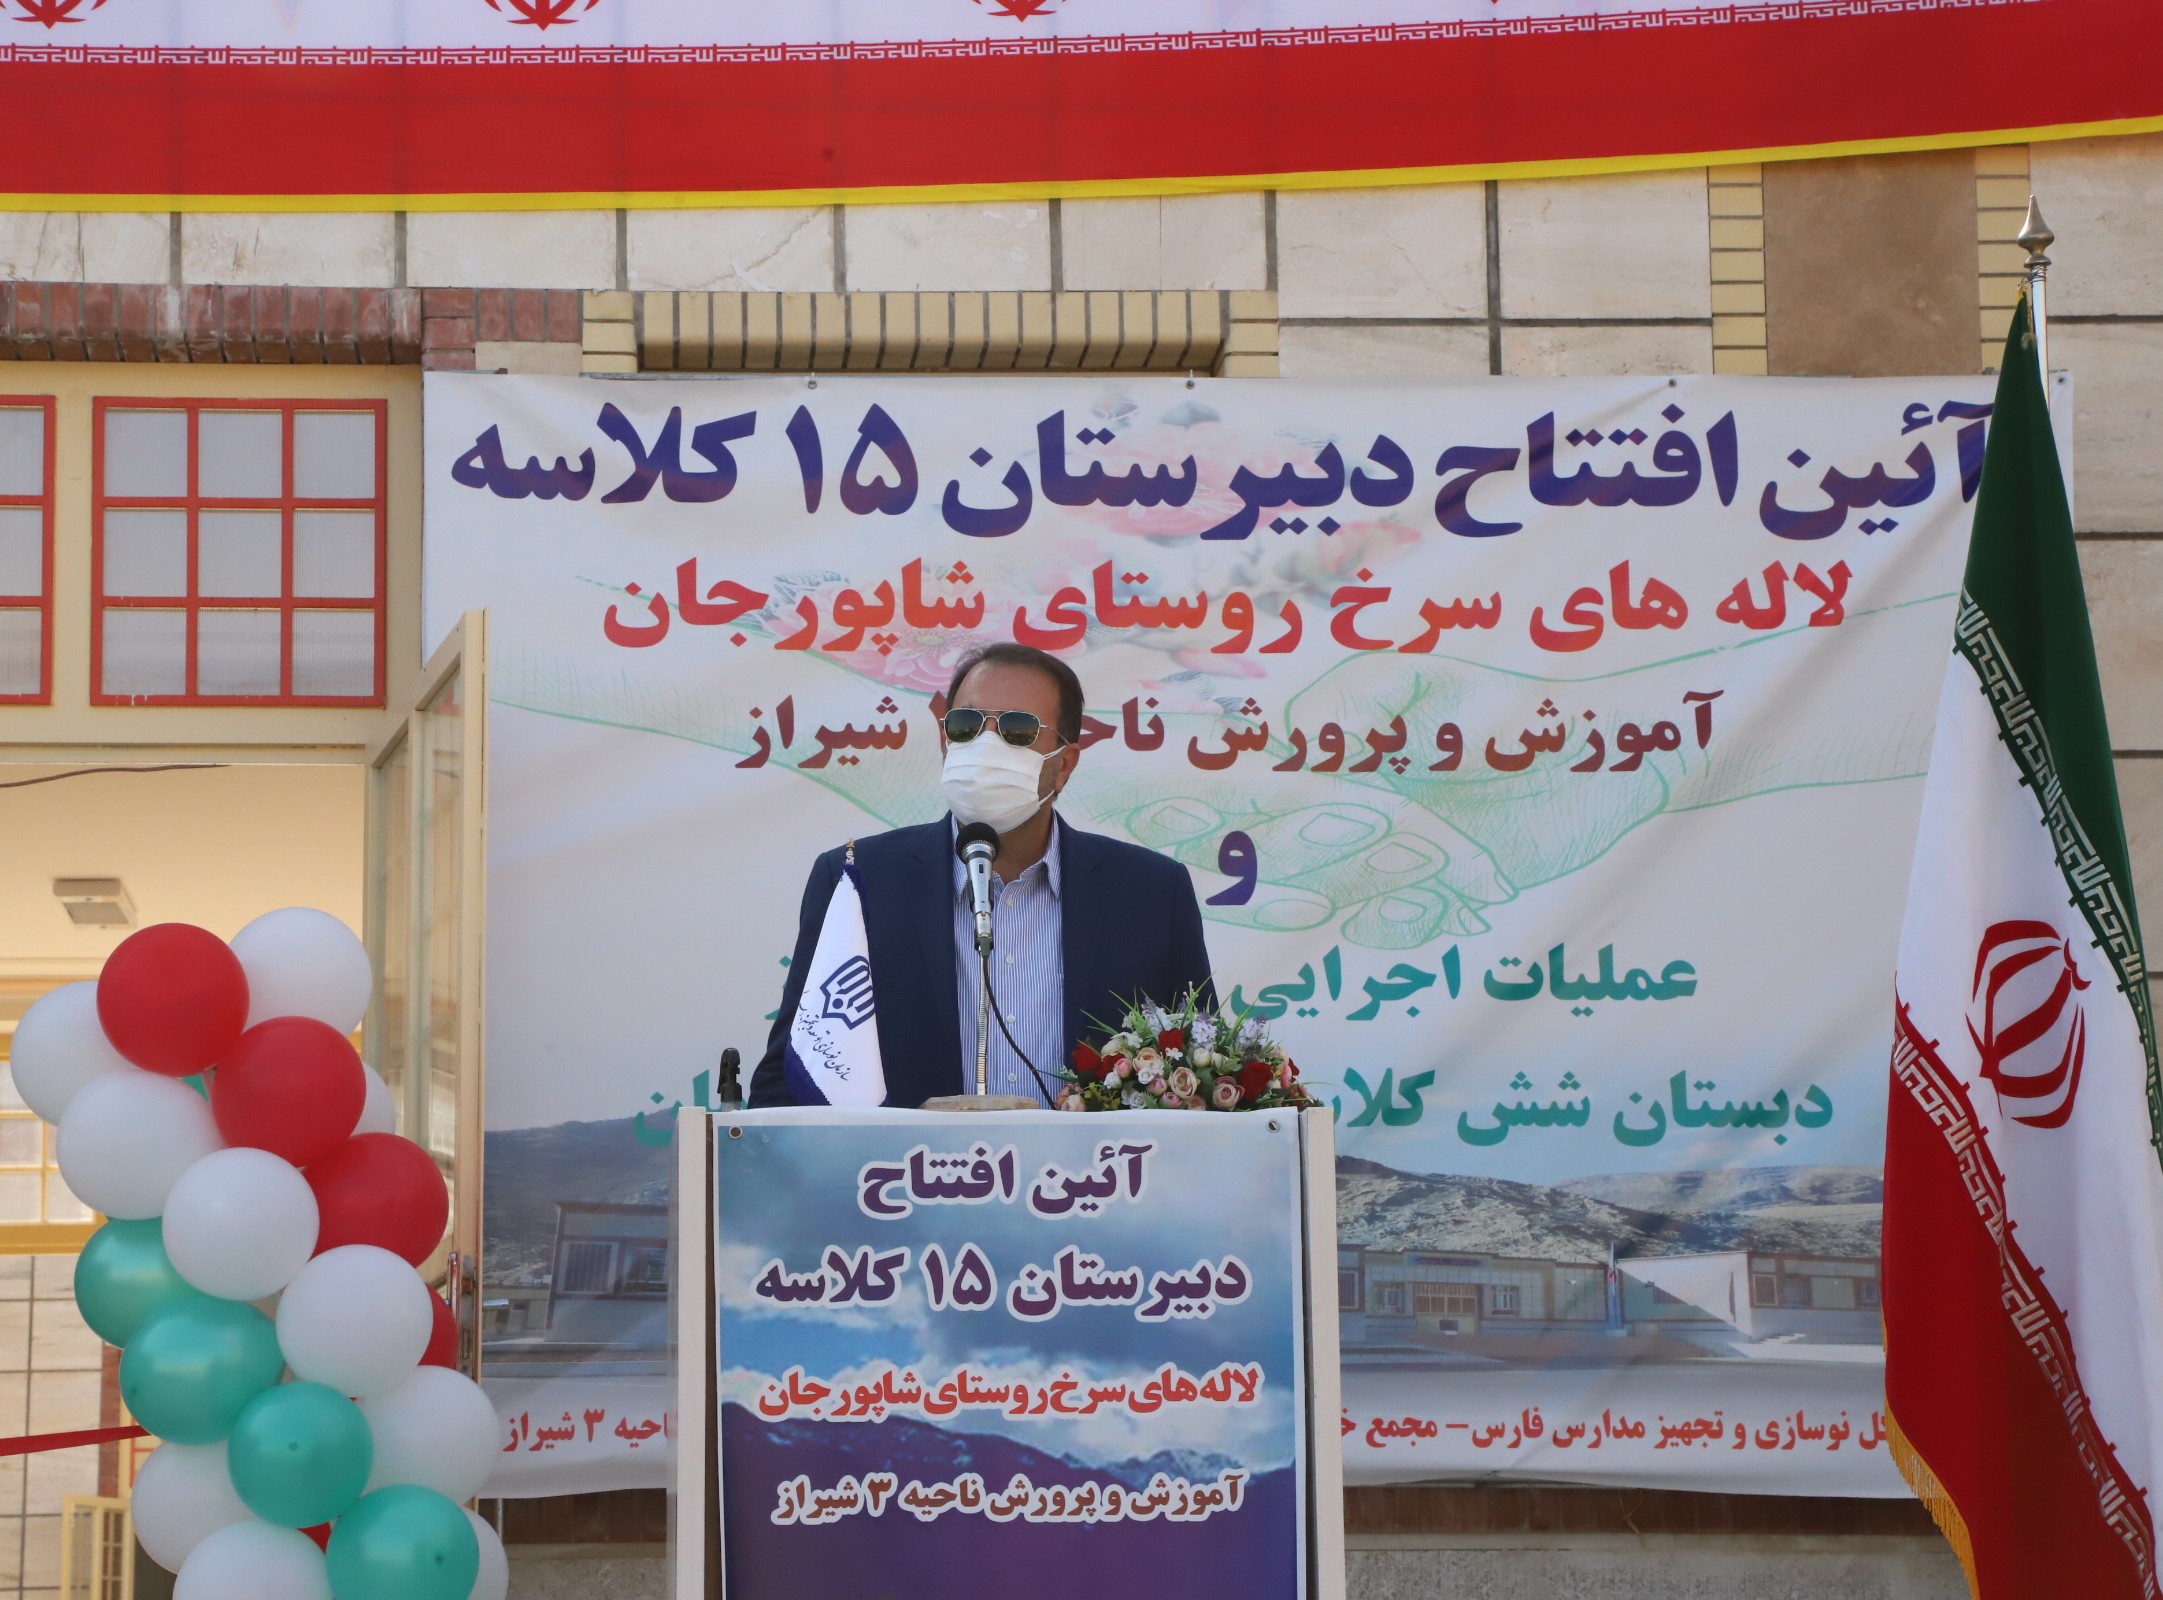 ۶۰ پروژه آموزشی در شهرستان شیراز در دست احداث است